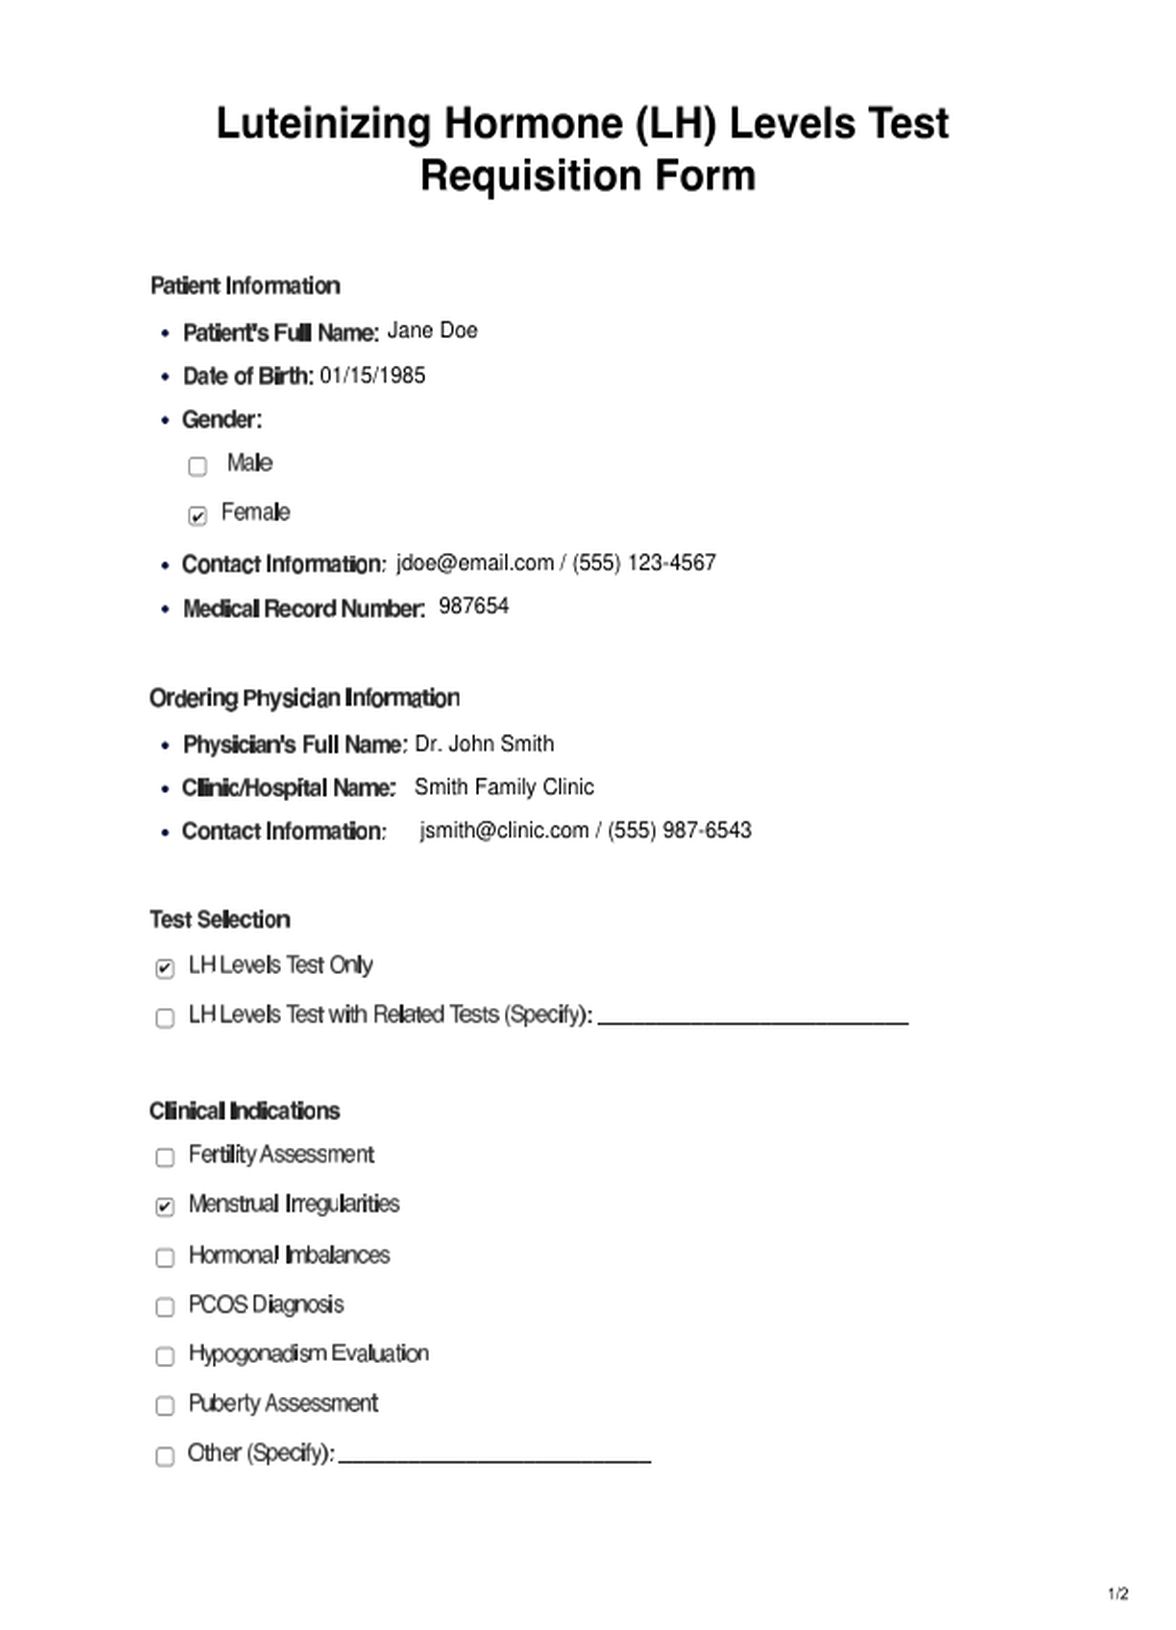 Luteinizing Hormone Levels PDF Example